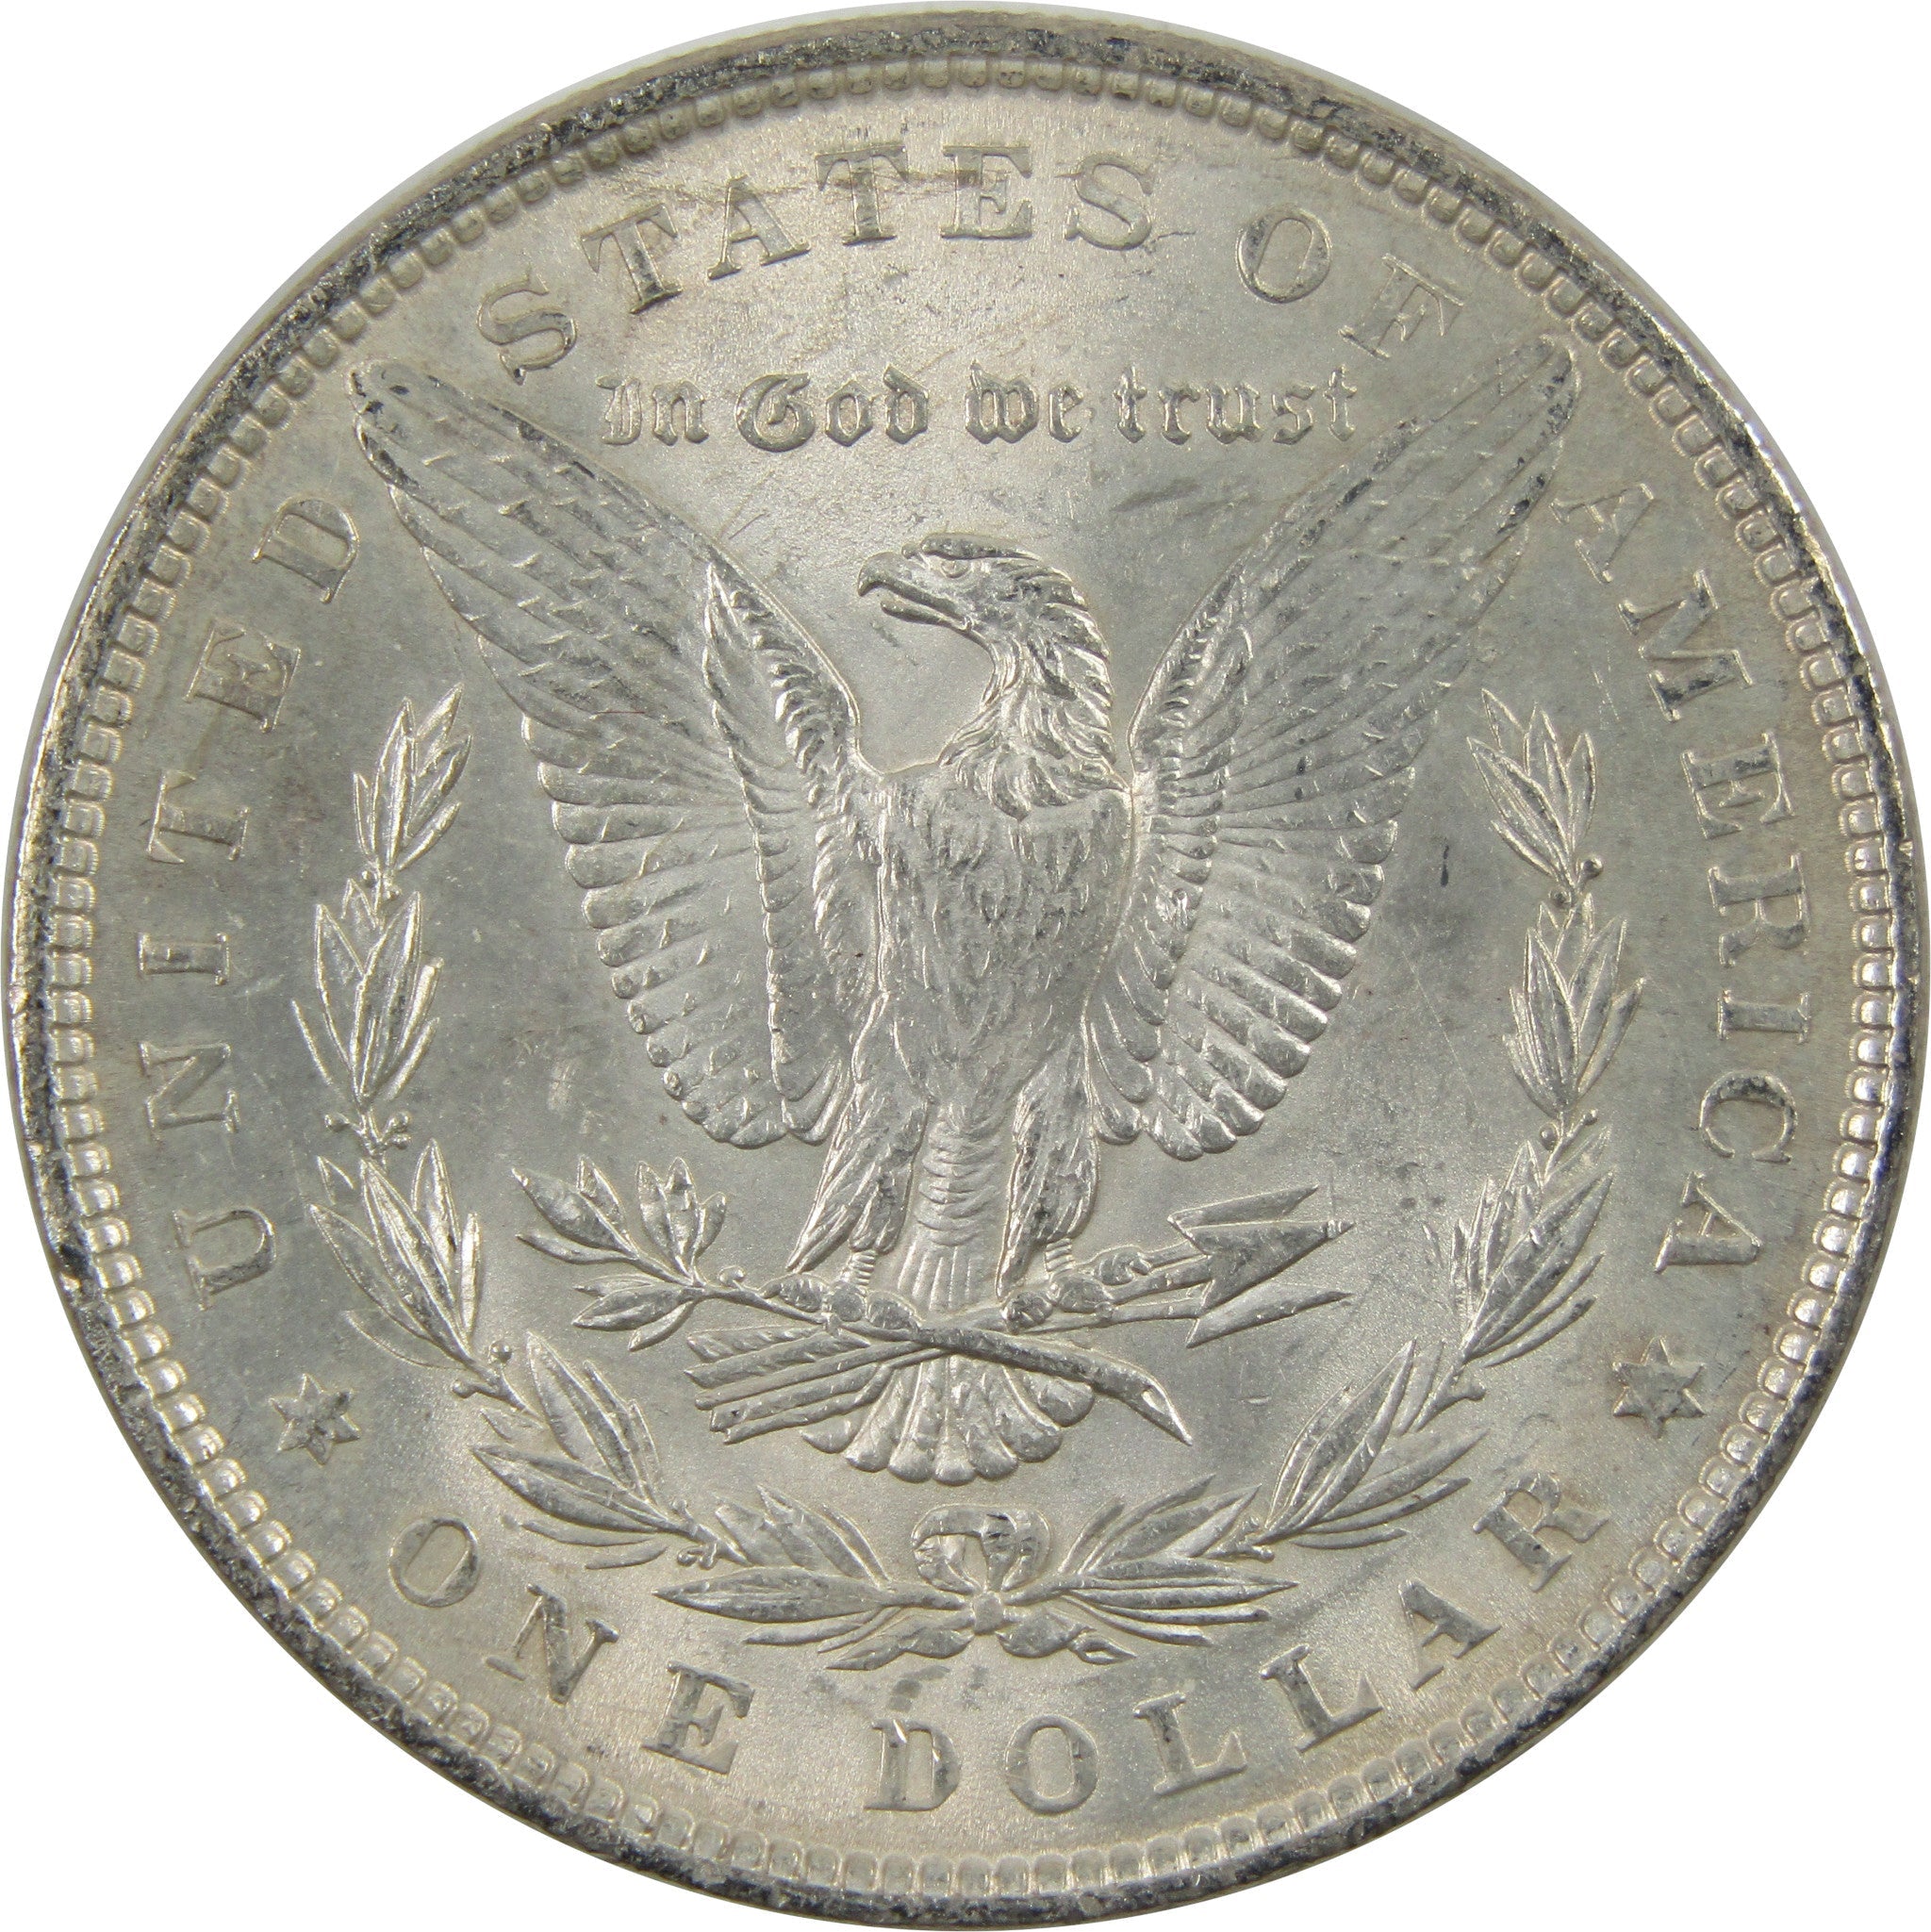 1881 Morgan Dollar BU Uncirculated 90% Silver $1 Coin SKU:I5450 - Morgan coin - Morgan silver dollar - Morgan silver dollar for sale - Profile Coins &amp; Collectibles